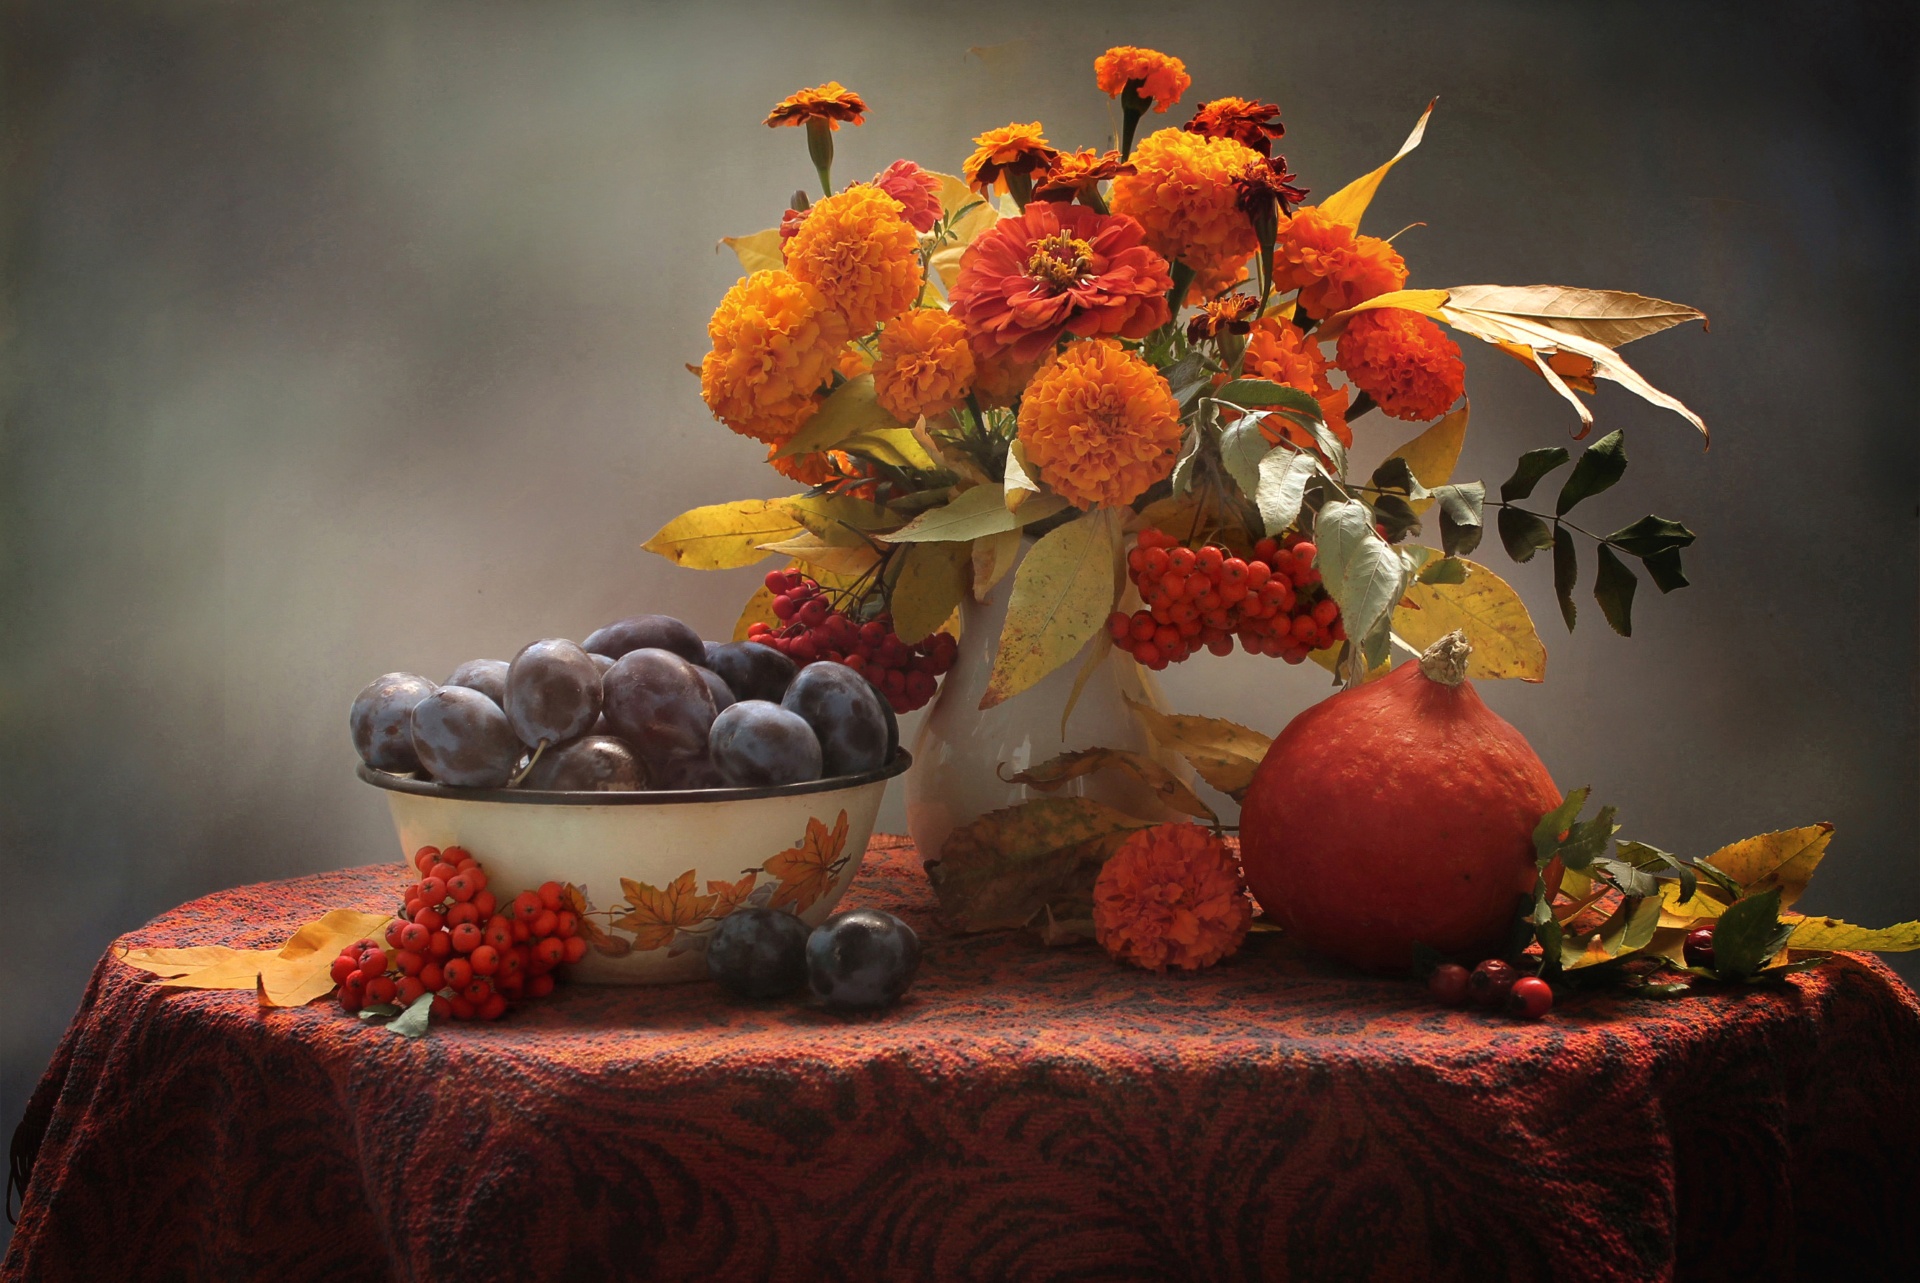 flower, pumpkin, photography, still life, fall, fruit, marigold, orange flower, plum